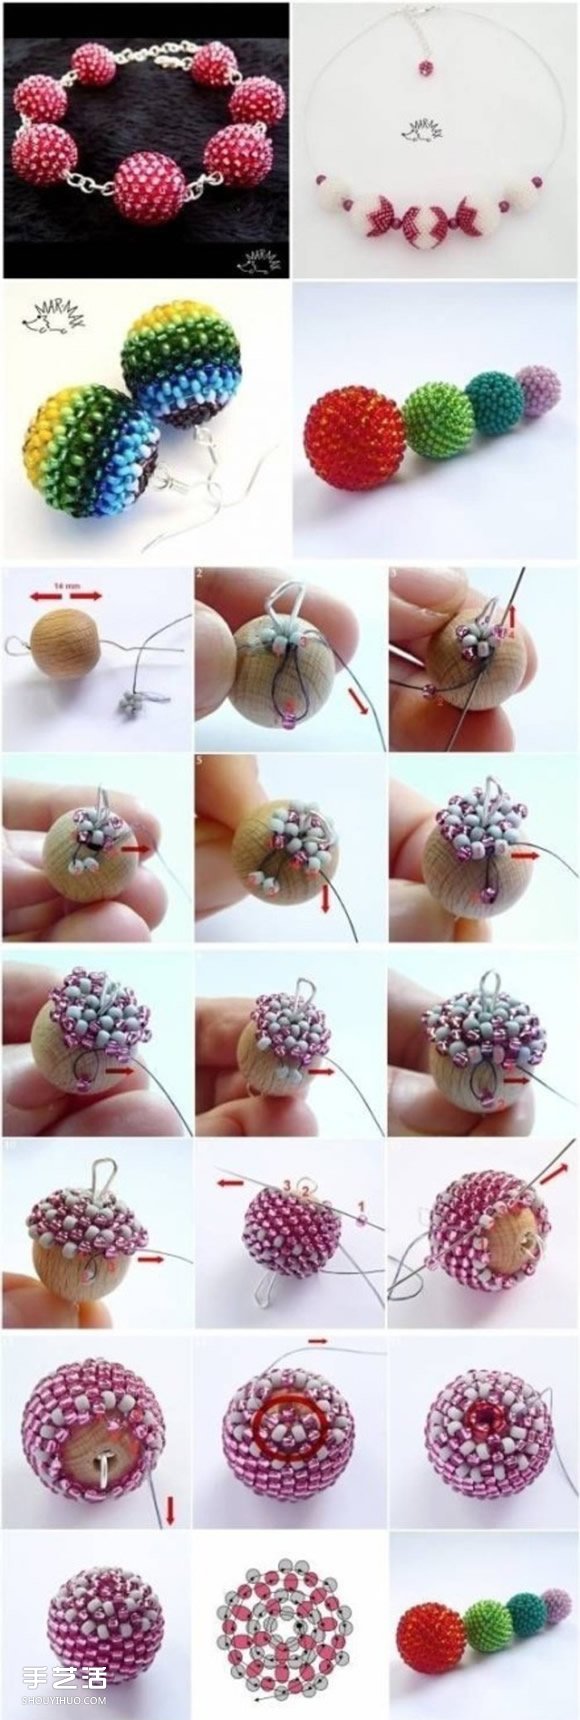 串珠圆球手工制作图解 串珠圆形珠子DIY教程